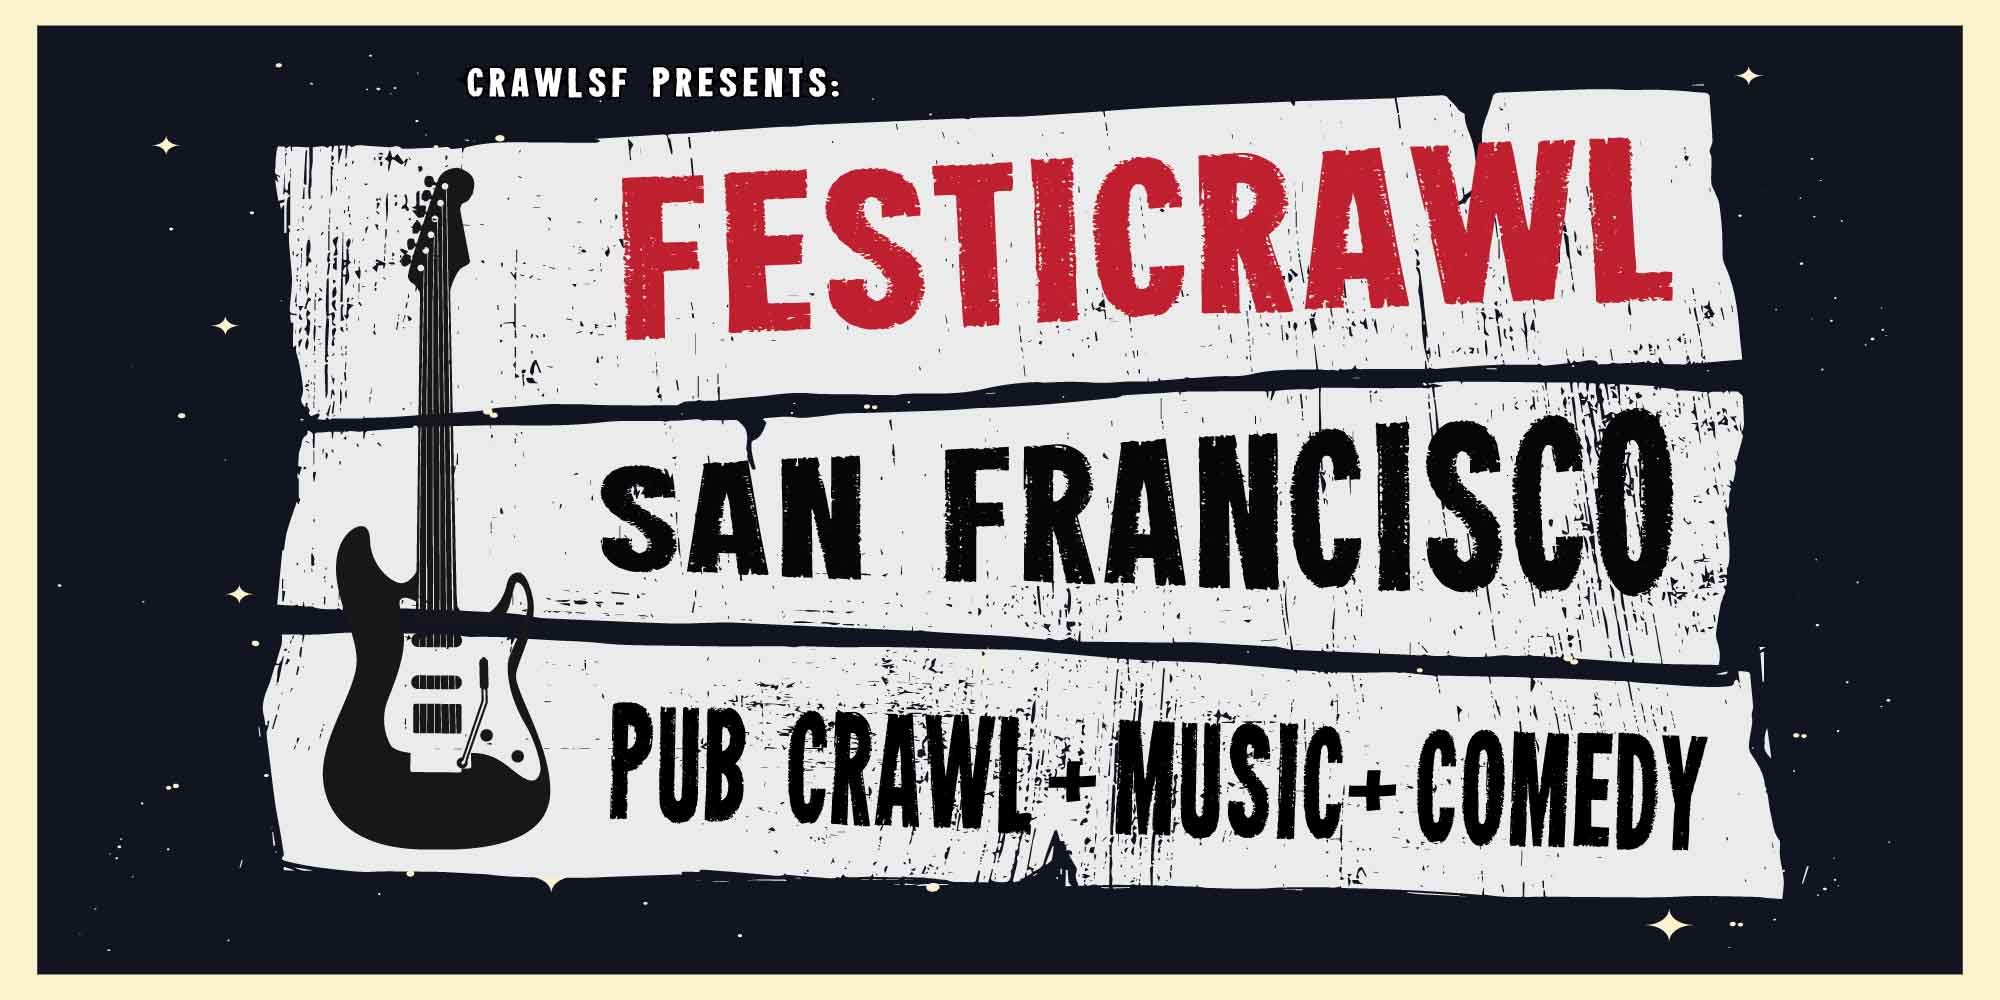 Festicrawl Music Festival Pub Crawl San Francisco